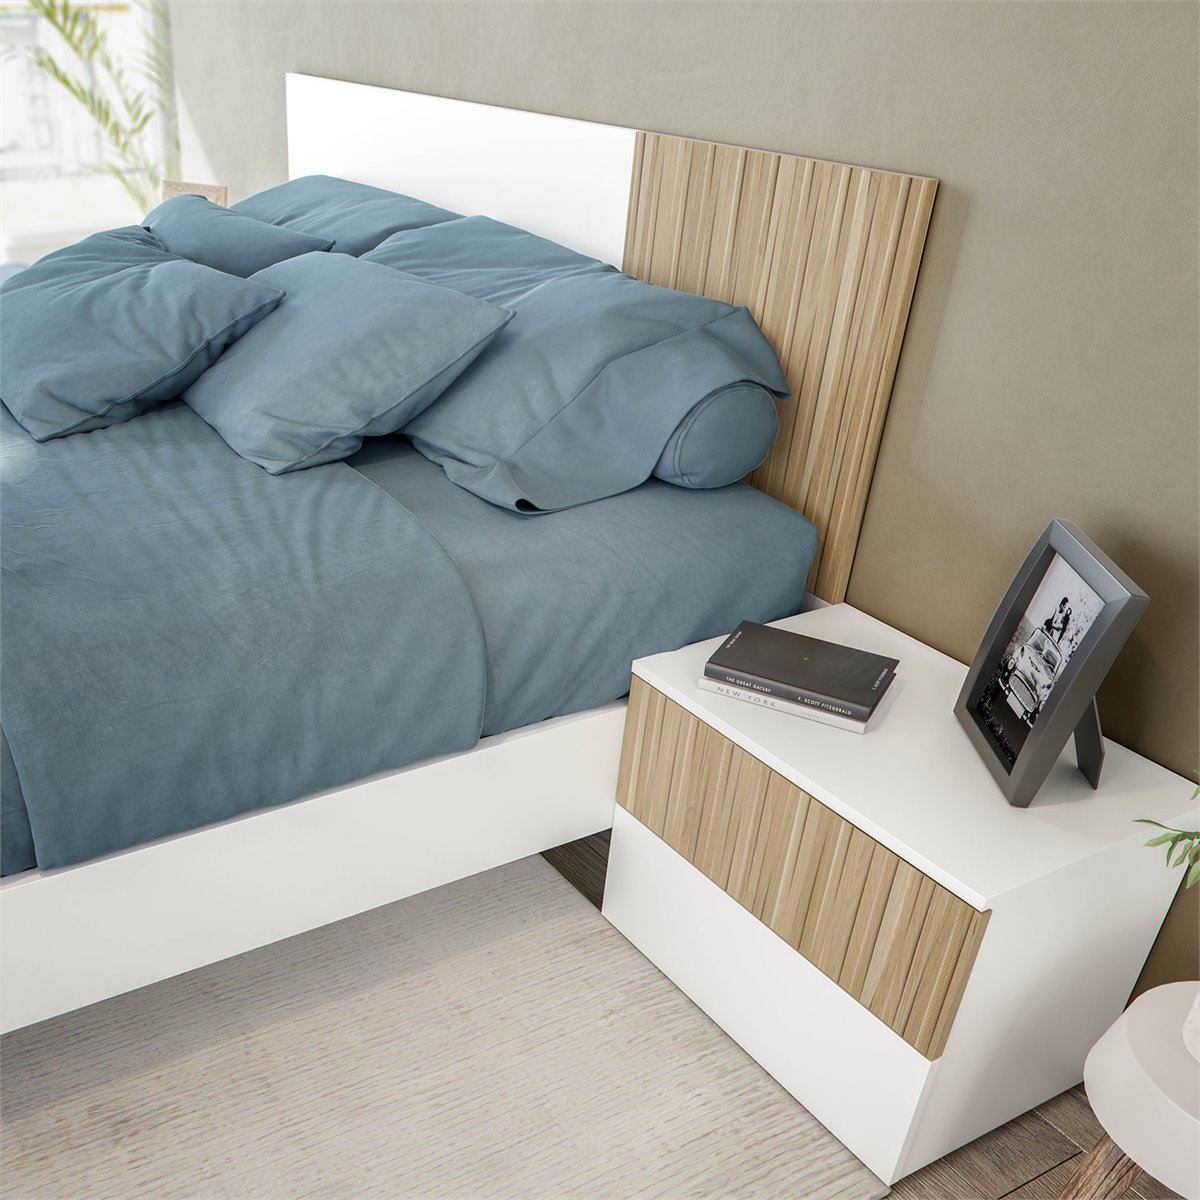 Cabecero de cama 2 mesitas color blanco y vintage dormitorio matrimonio  estilo moderno nordico cabezal para